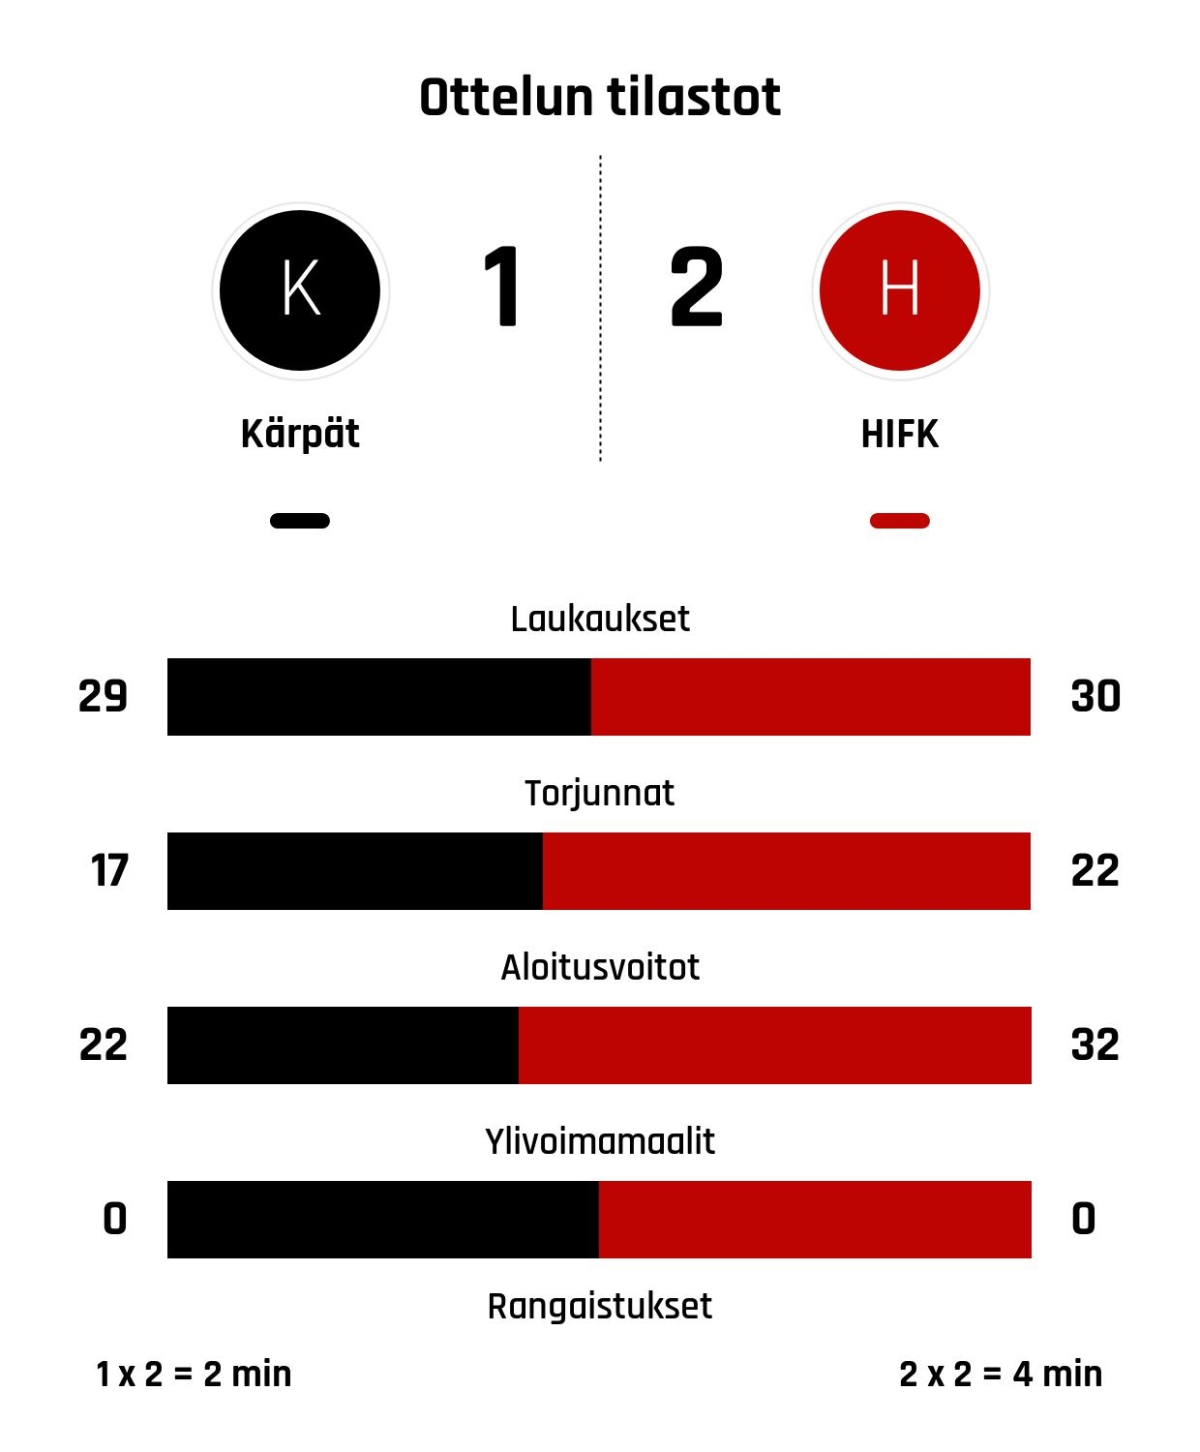 HIFK niukkaan voittoon Kärpistä – Nättinen iski ratkaisun